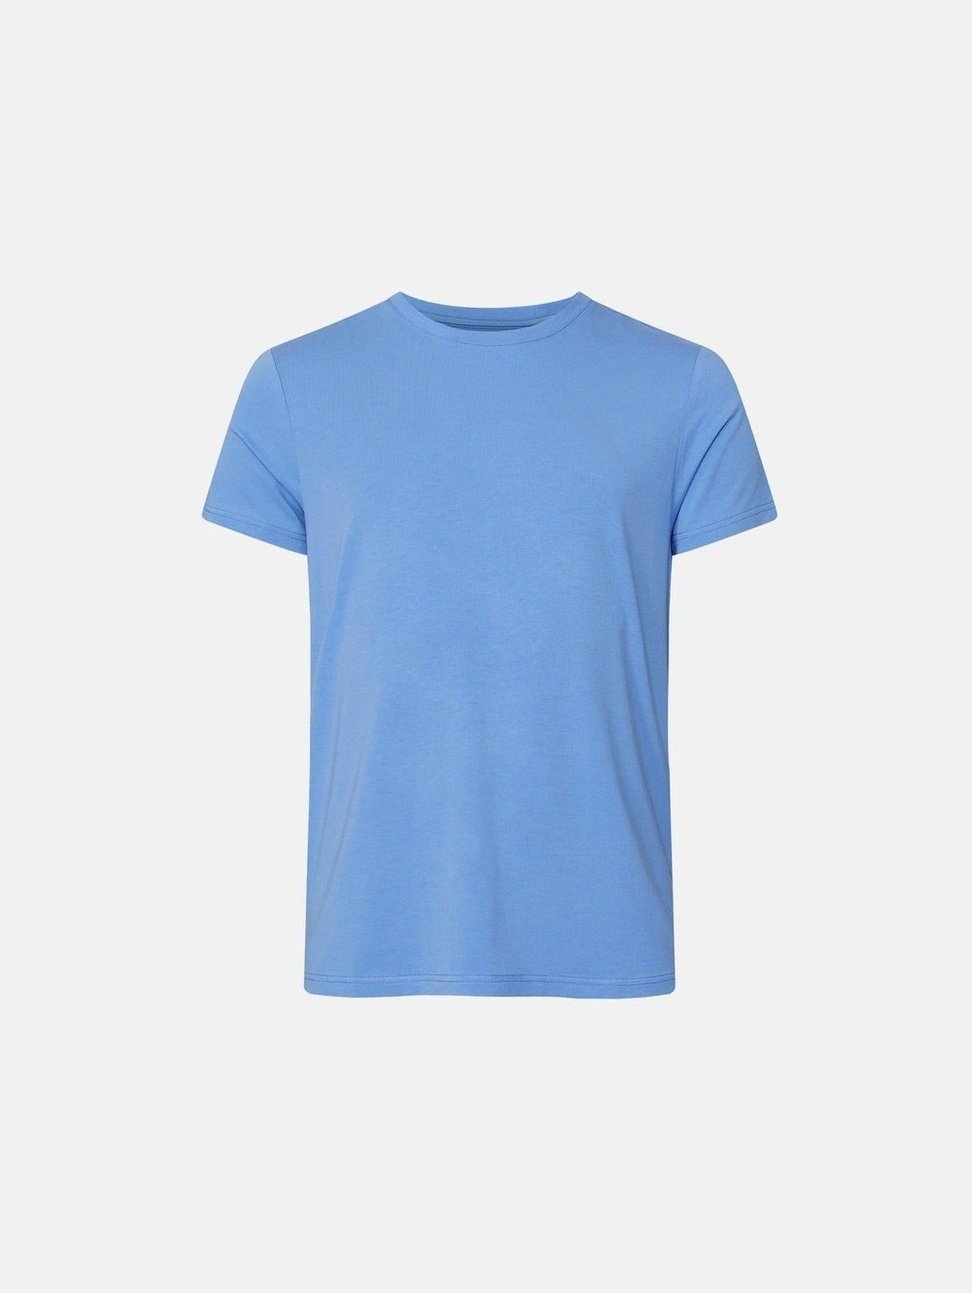  T-skjorteResteröds Bambus T-skjorte - Blå